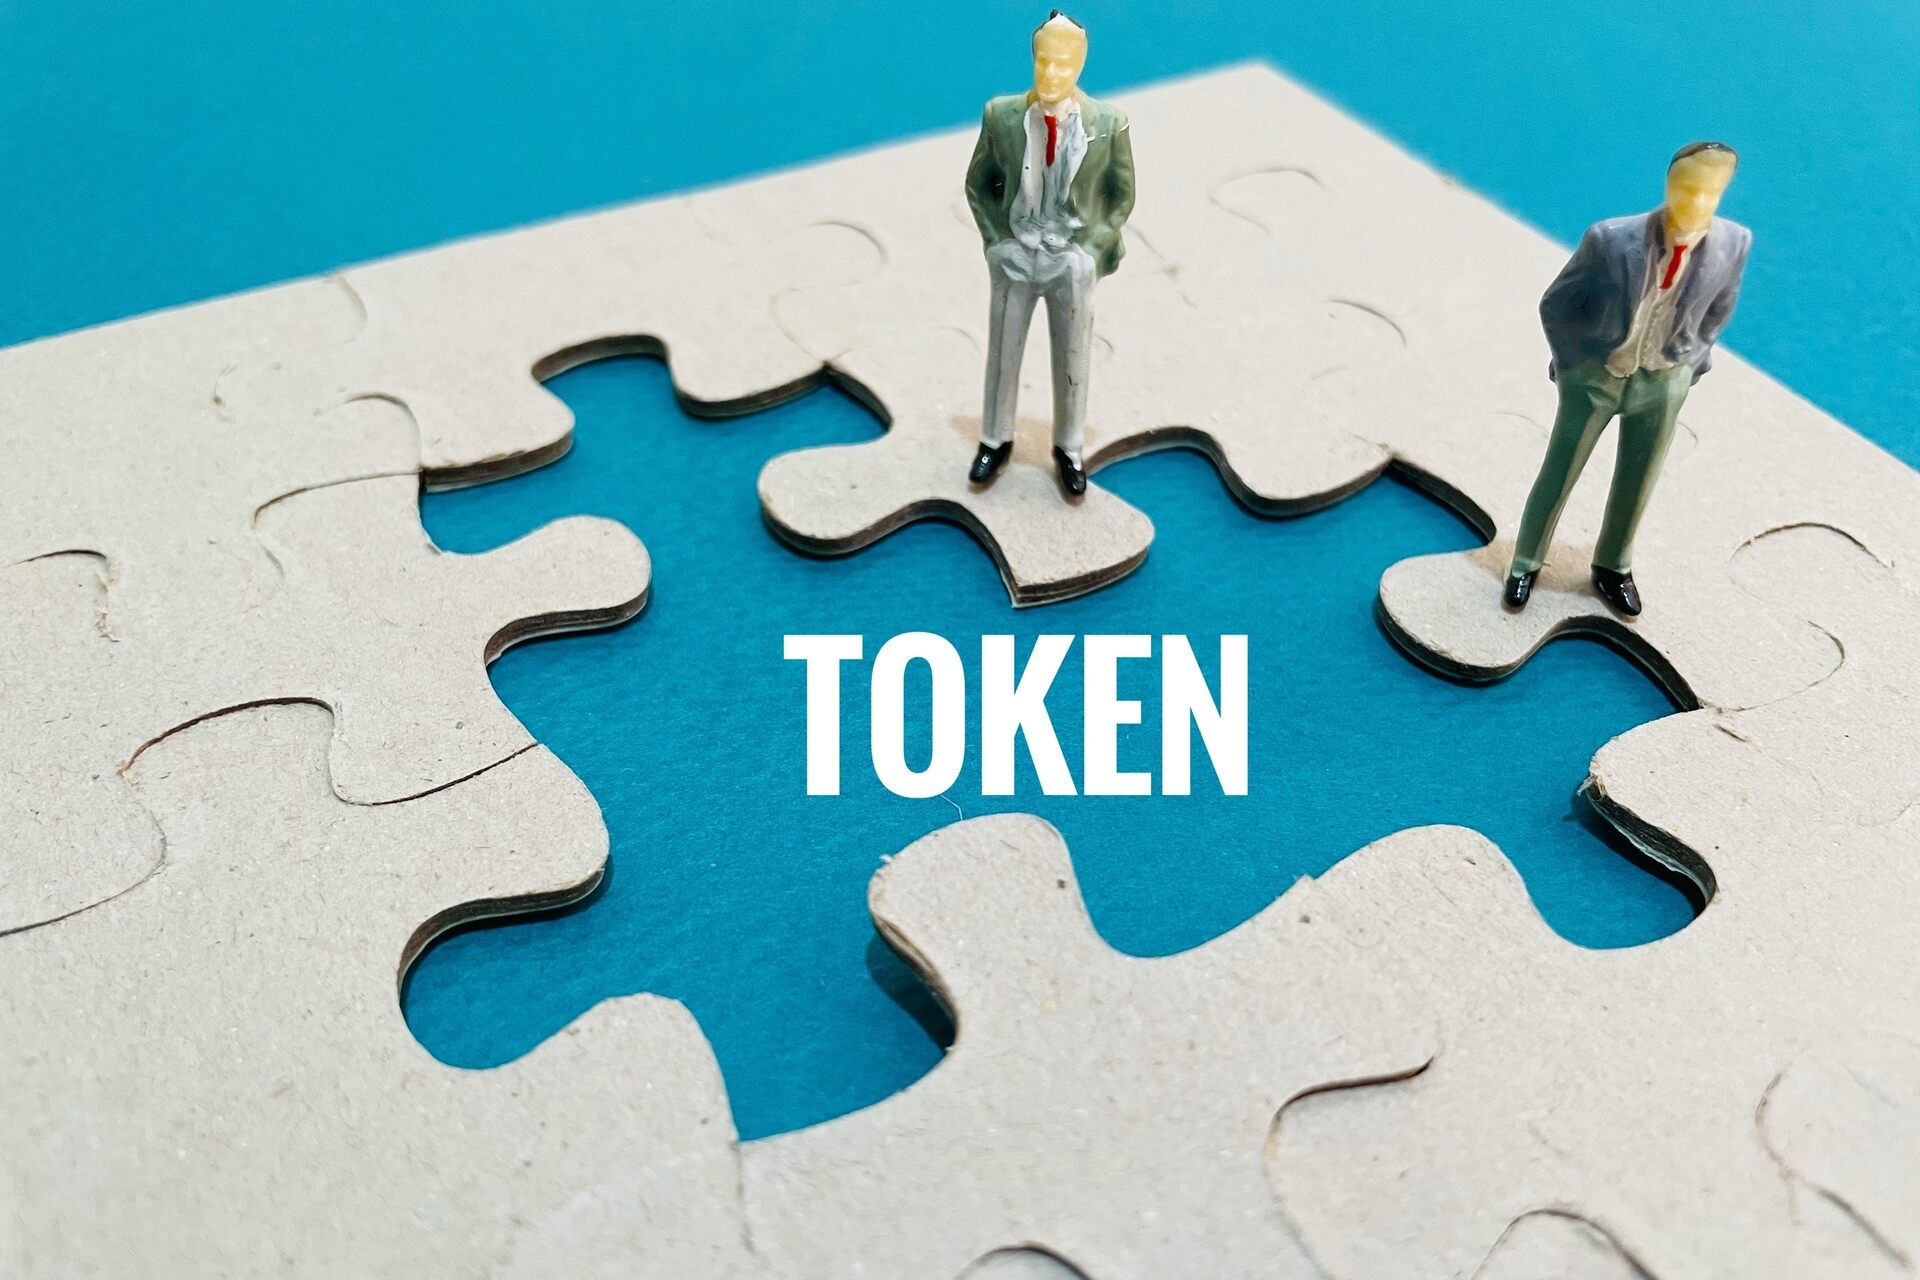 Tokenizzazione: la tokenizzazione degli asset rappresenta un modo alternativo e innovativo per ottenere la proprietà frazionata di un bene